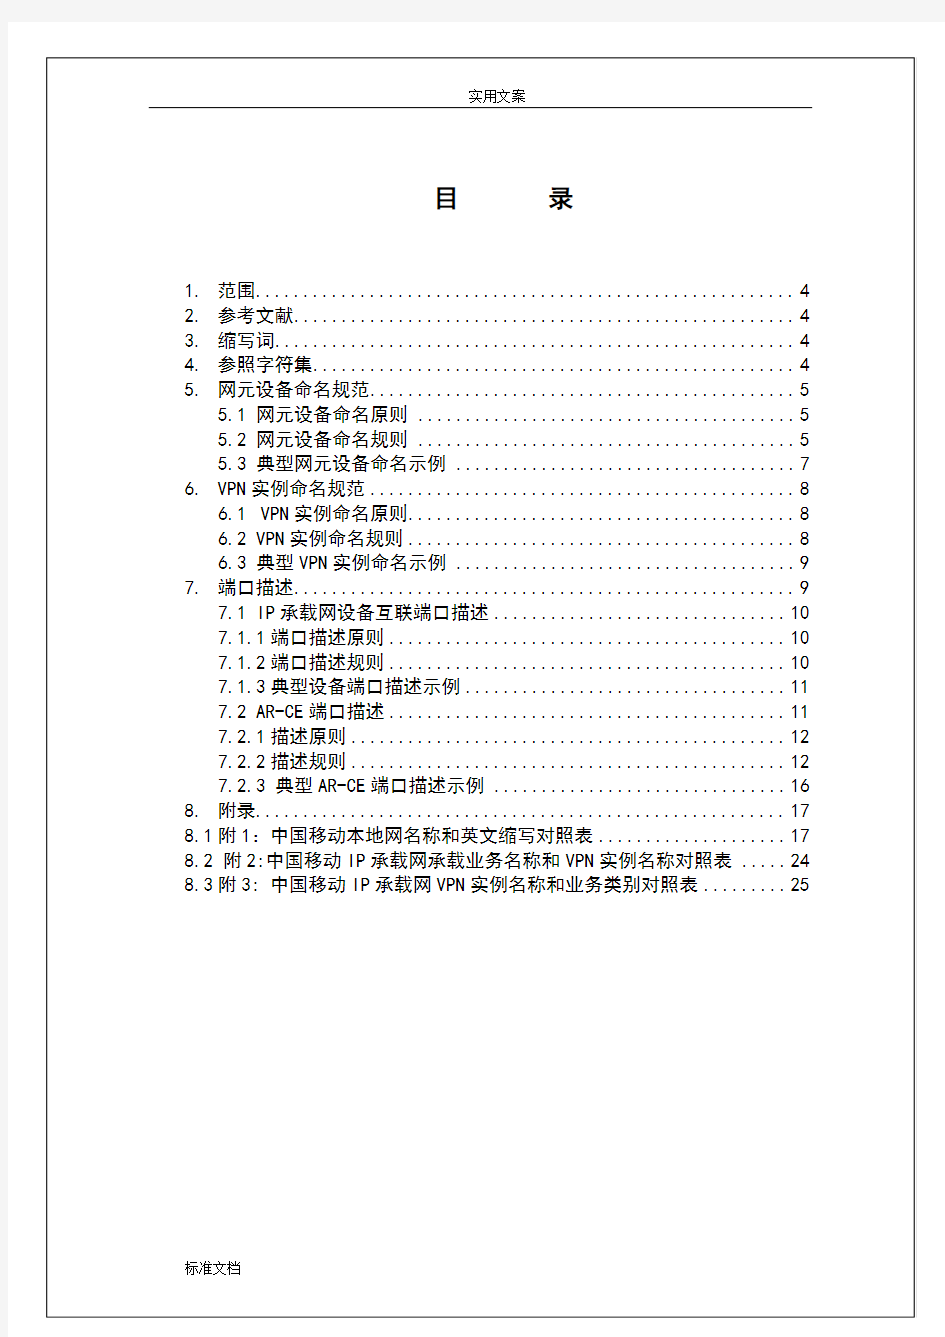 中国移动IP承载网网络资源命名要求规范(V2.1.5)